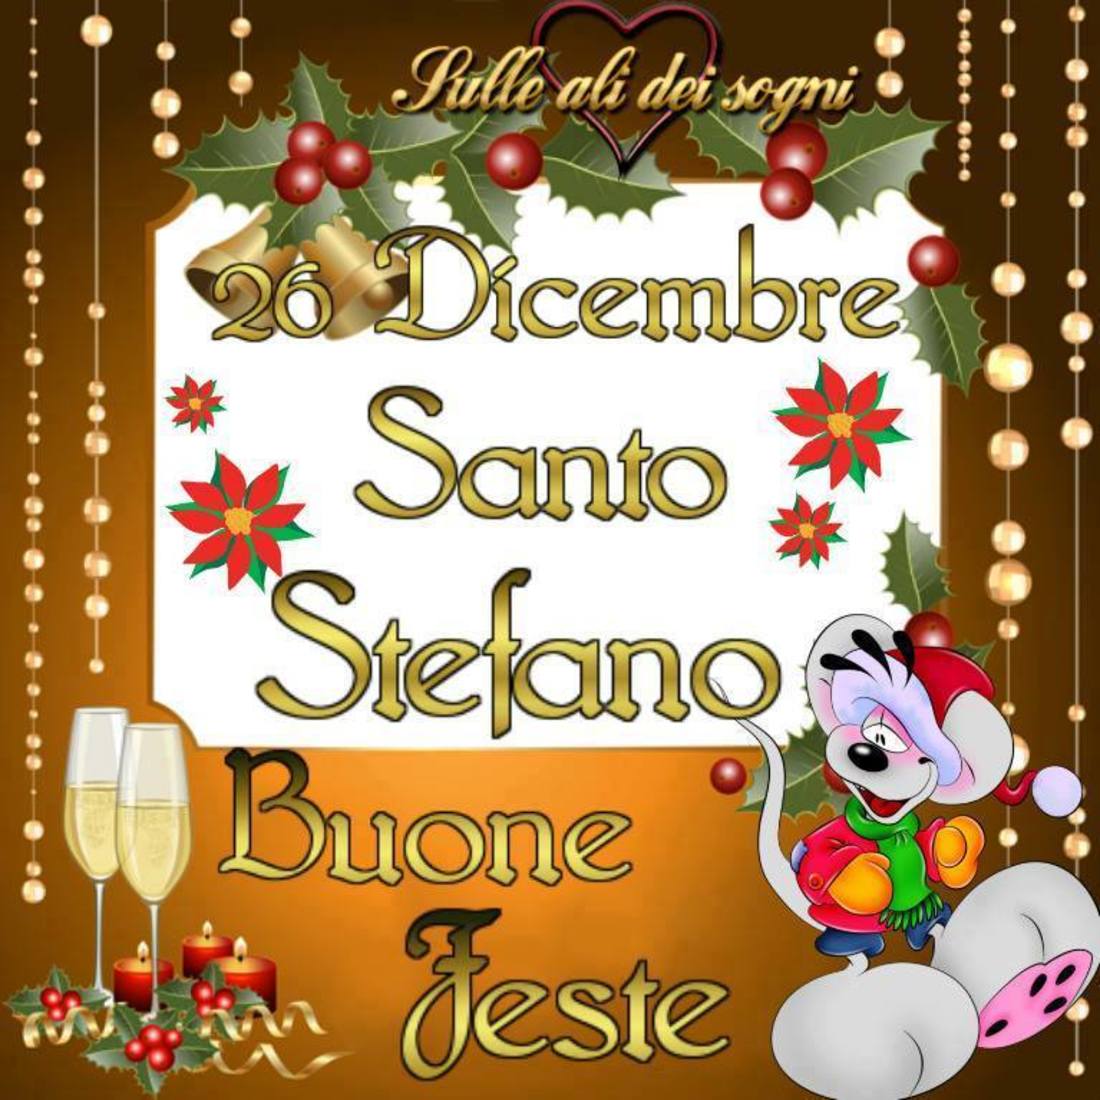 Buon Santo Stefano Buone Feste